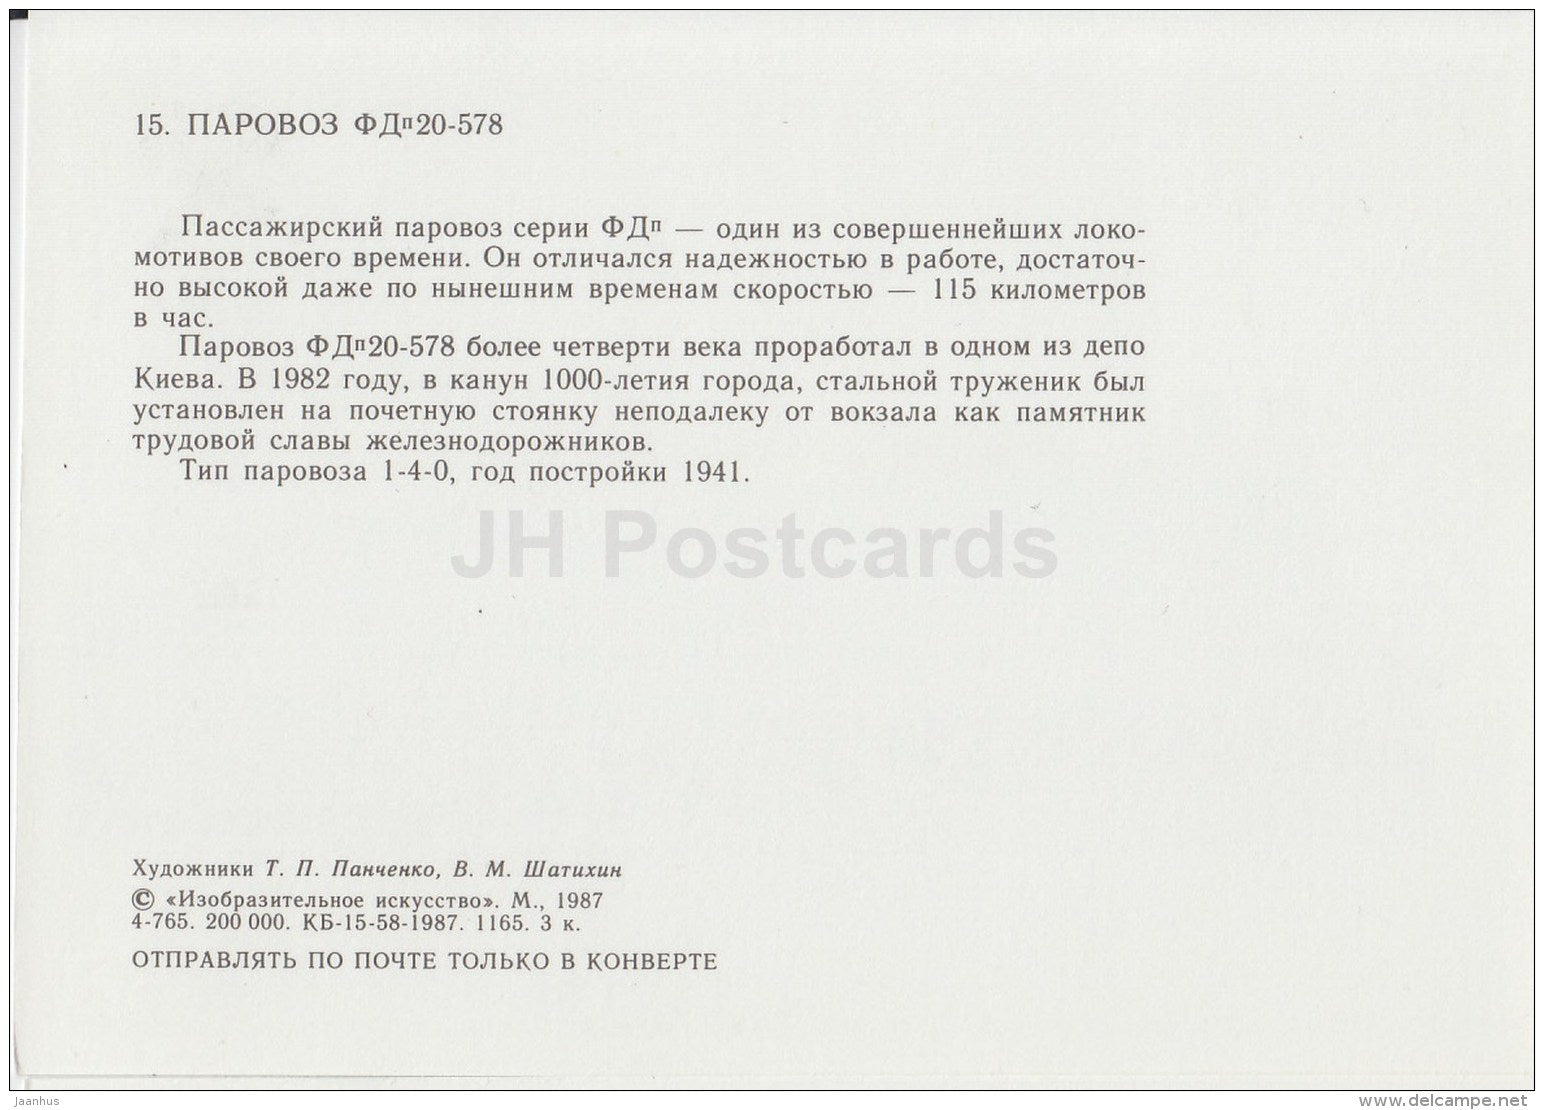 FDP20-578 - locomotive - train - railway - 1987 - Russia USSR - unused - JH Postcards